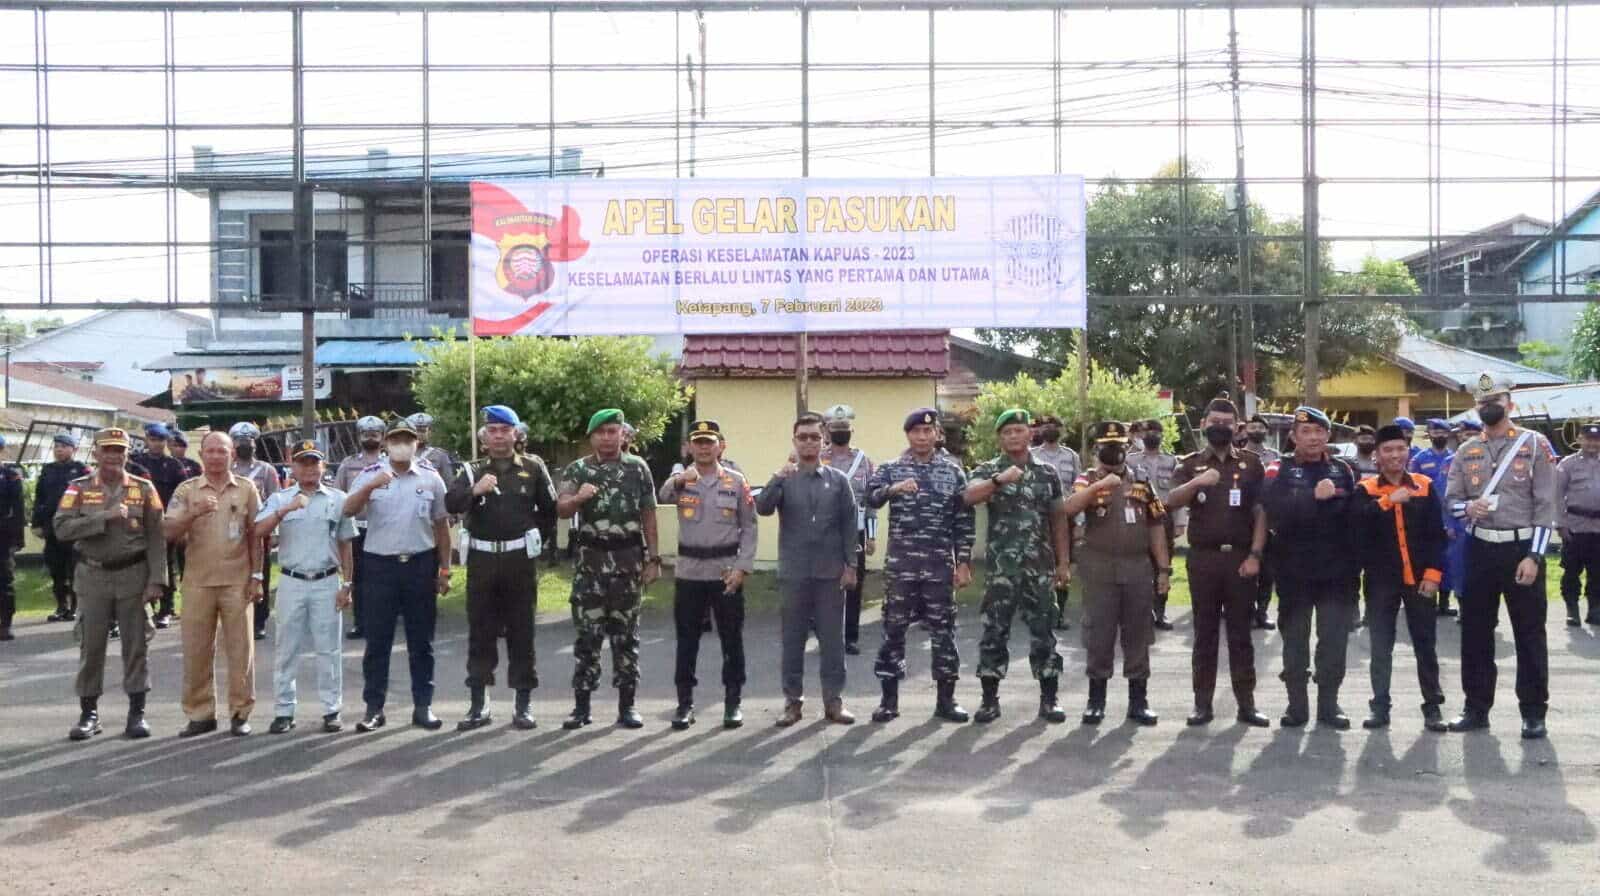 Foto bersama usai apel Gelar Pasukan Operasi Keselamatan Kapuas 2023 di lapangan Mapolres Ketapang, Selasa (07/02/2023). (Foto: Adi LC)